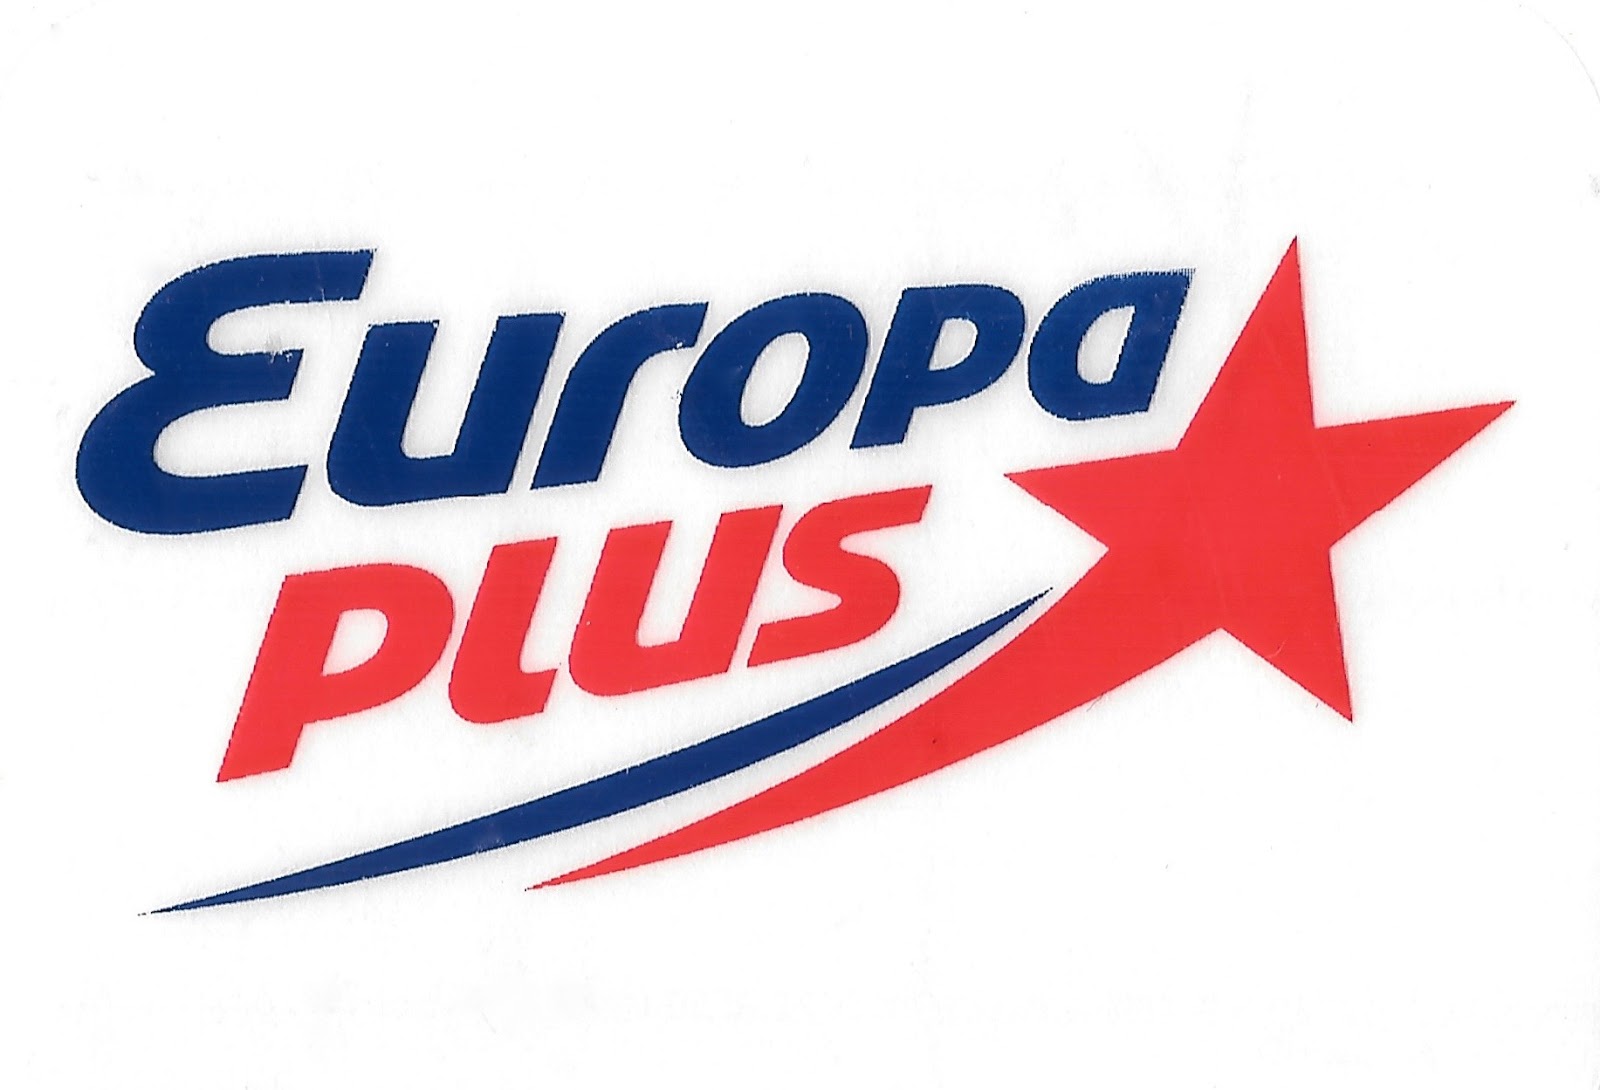 Европа плюс. Европа плюс топ 40. Европа плюс 1990. Европа плюс логотип. Слушать радио европа топ